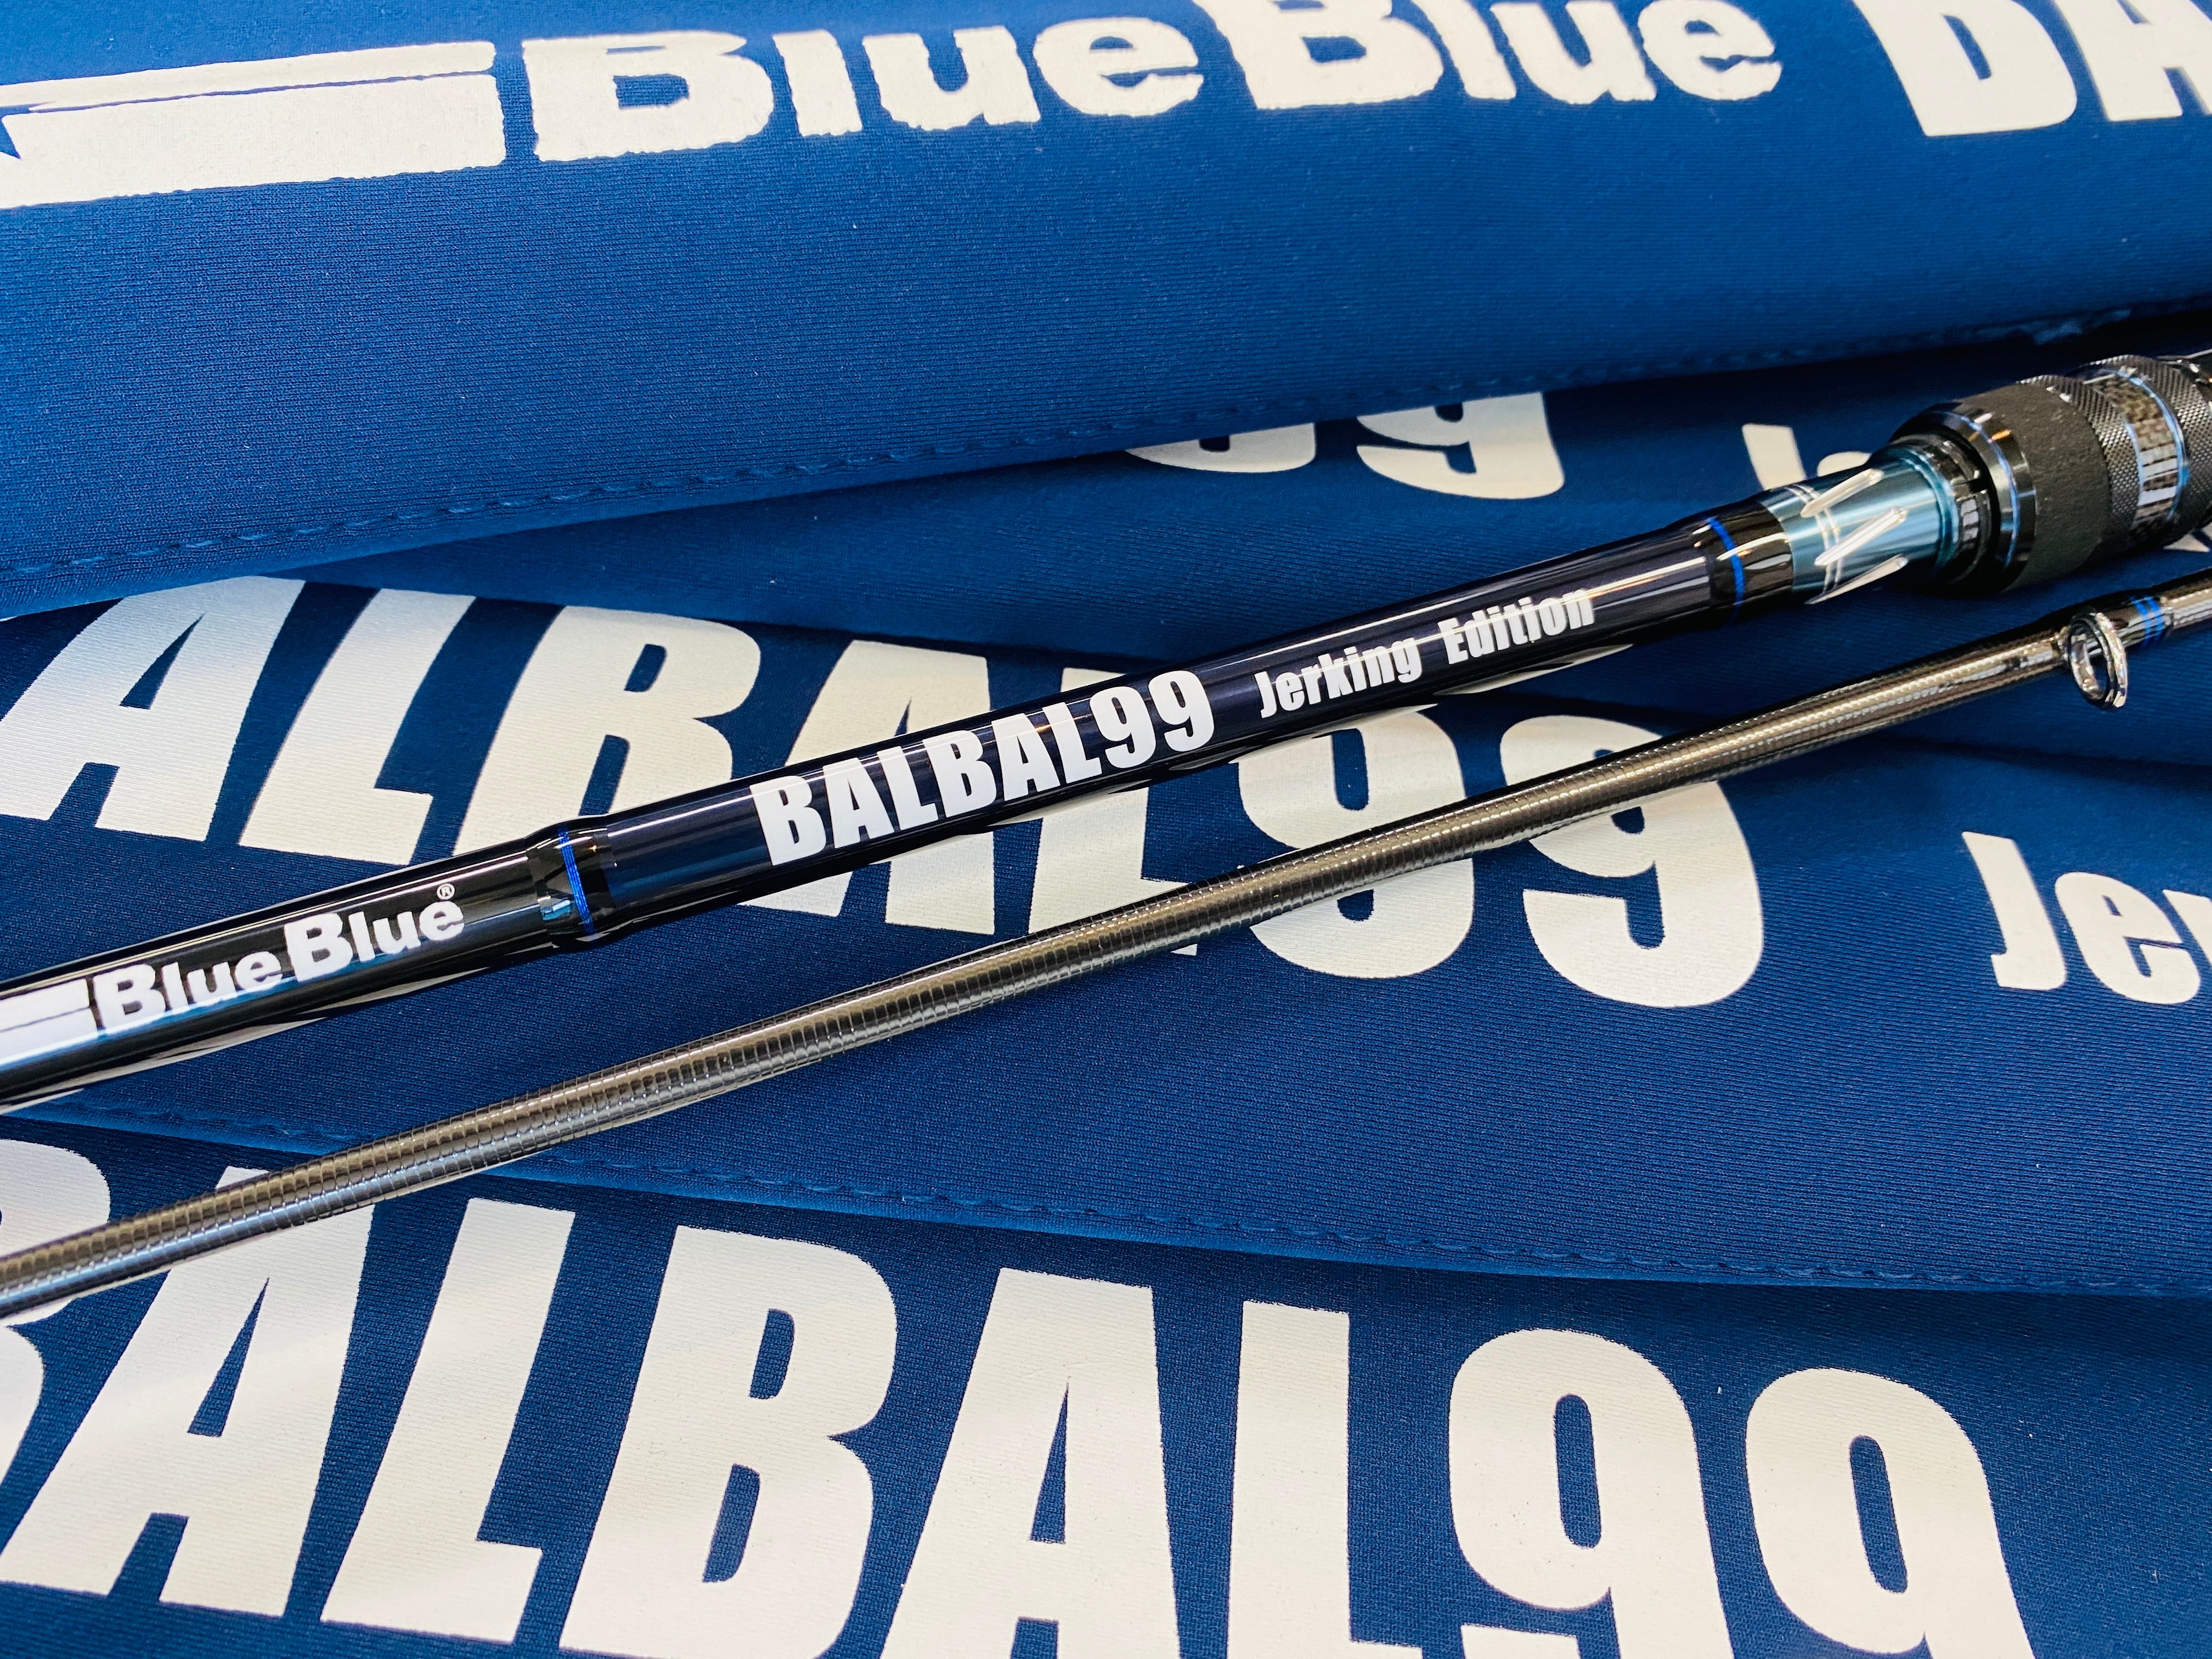 BlueBlue BALBAL99 Jerking Editionガイドな錆とかないですか